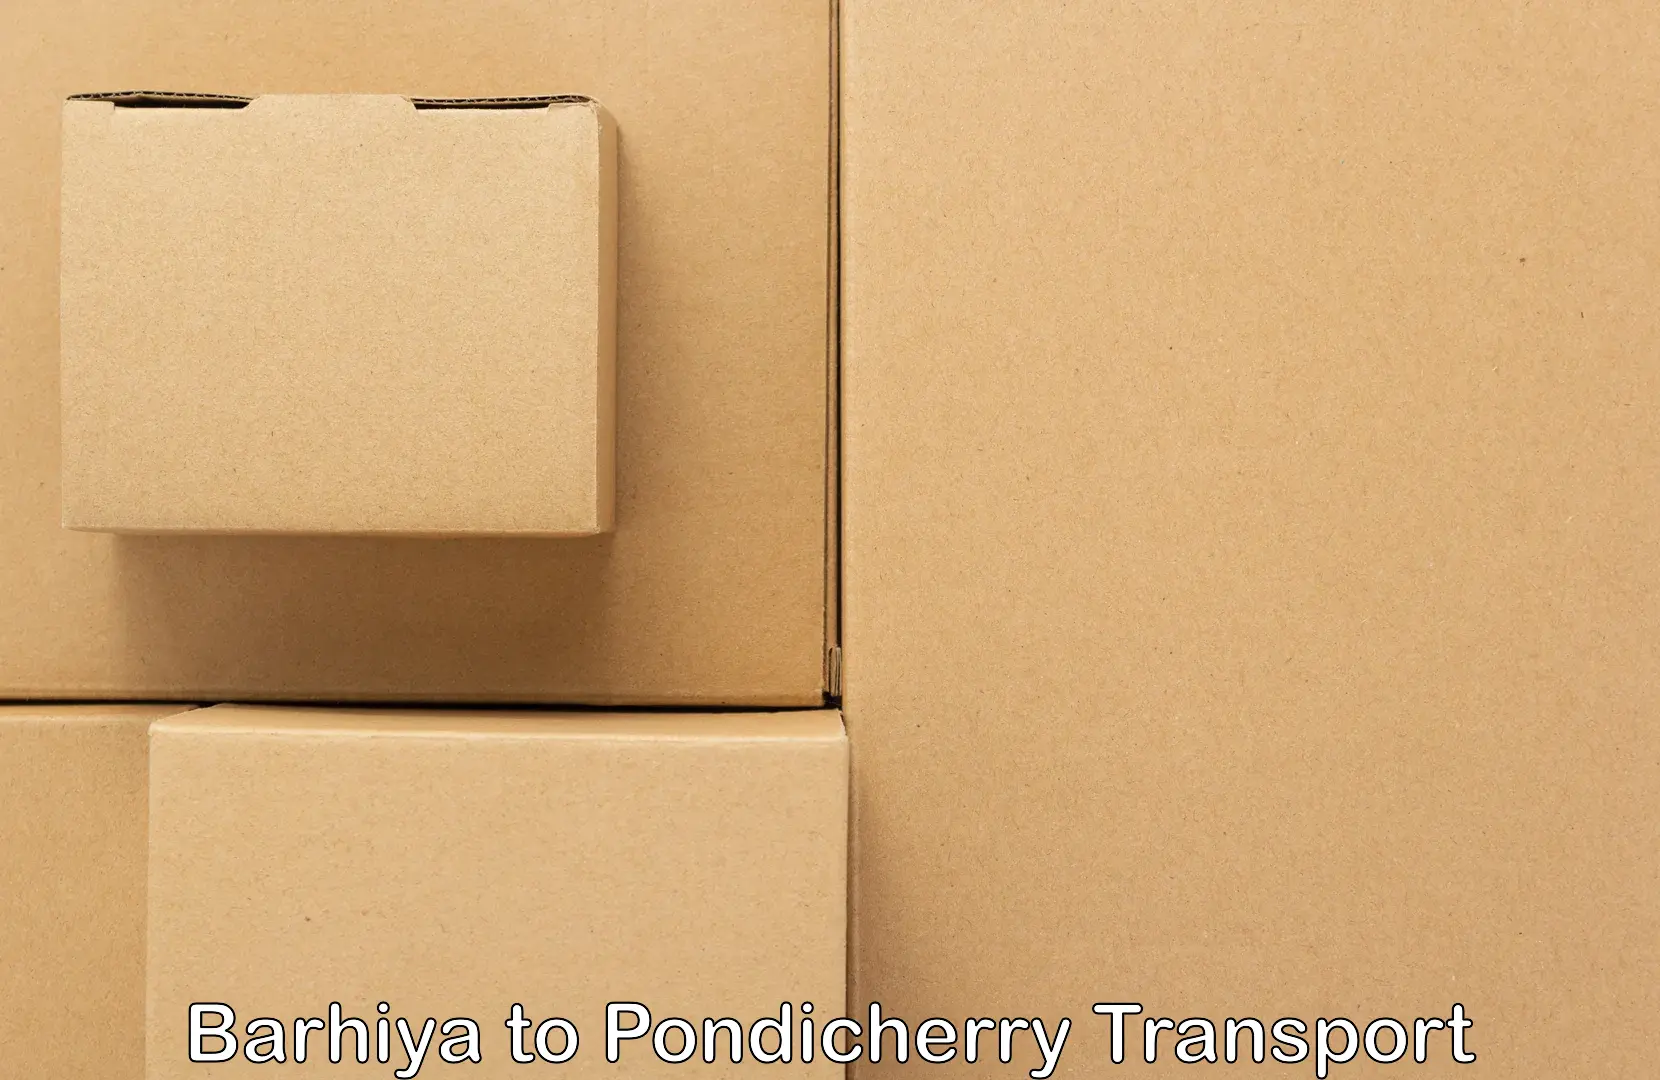 Shipping partner in Barhiya to Pondicherry